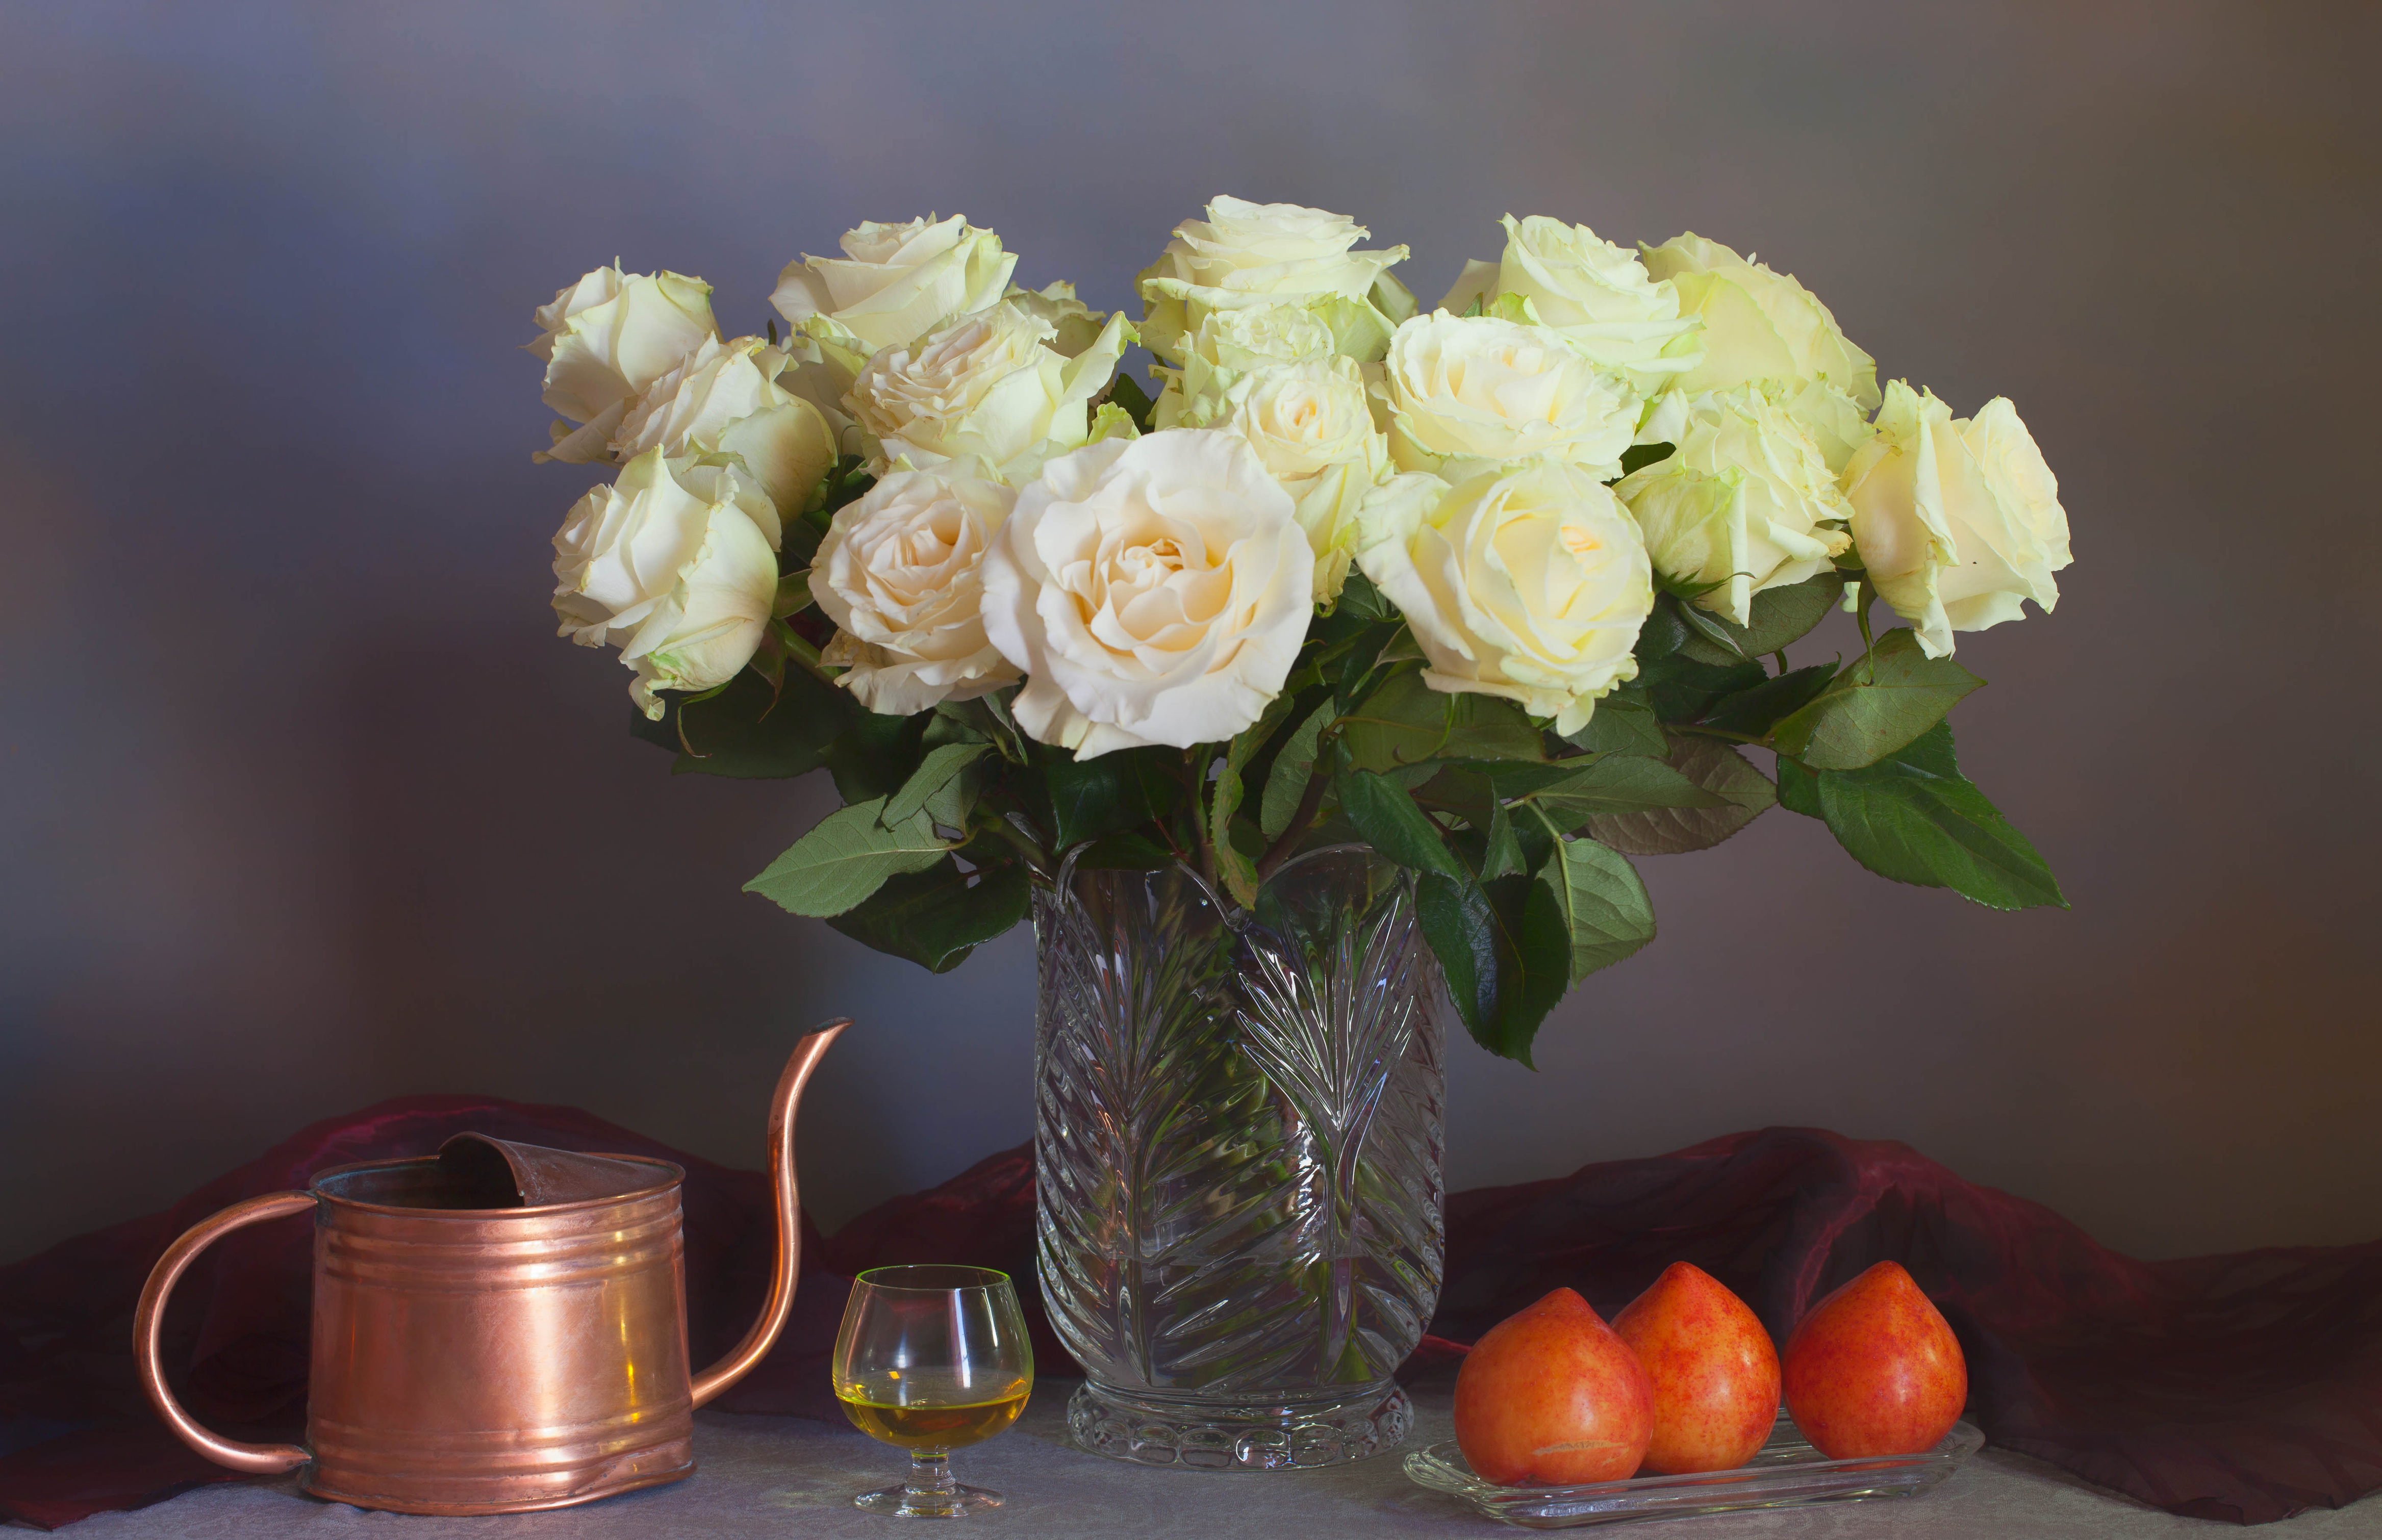 Красивые розы фото букеты в вазе